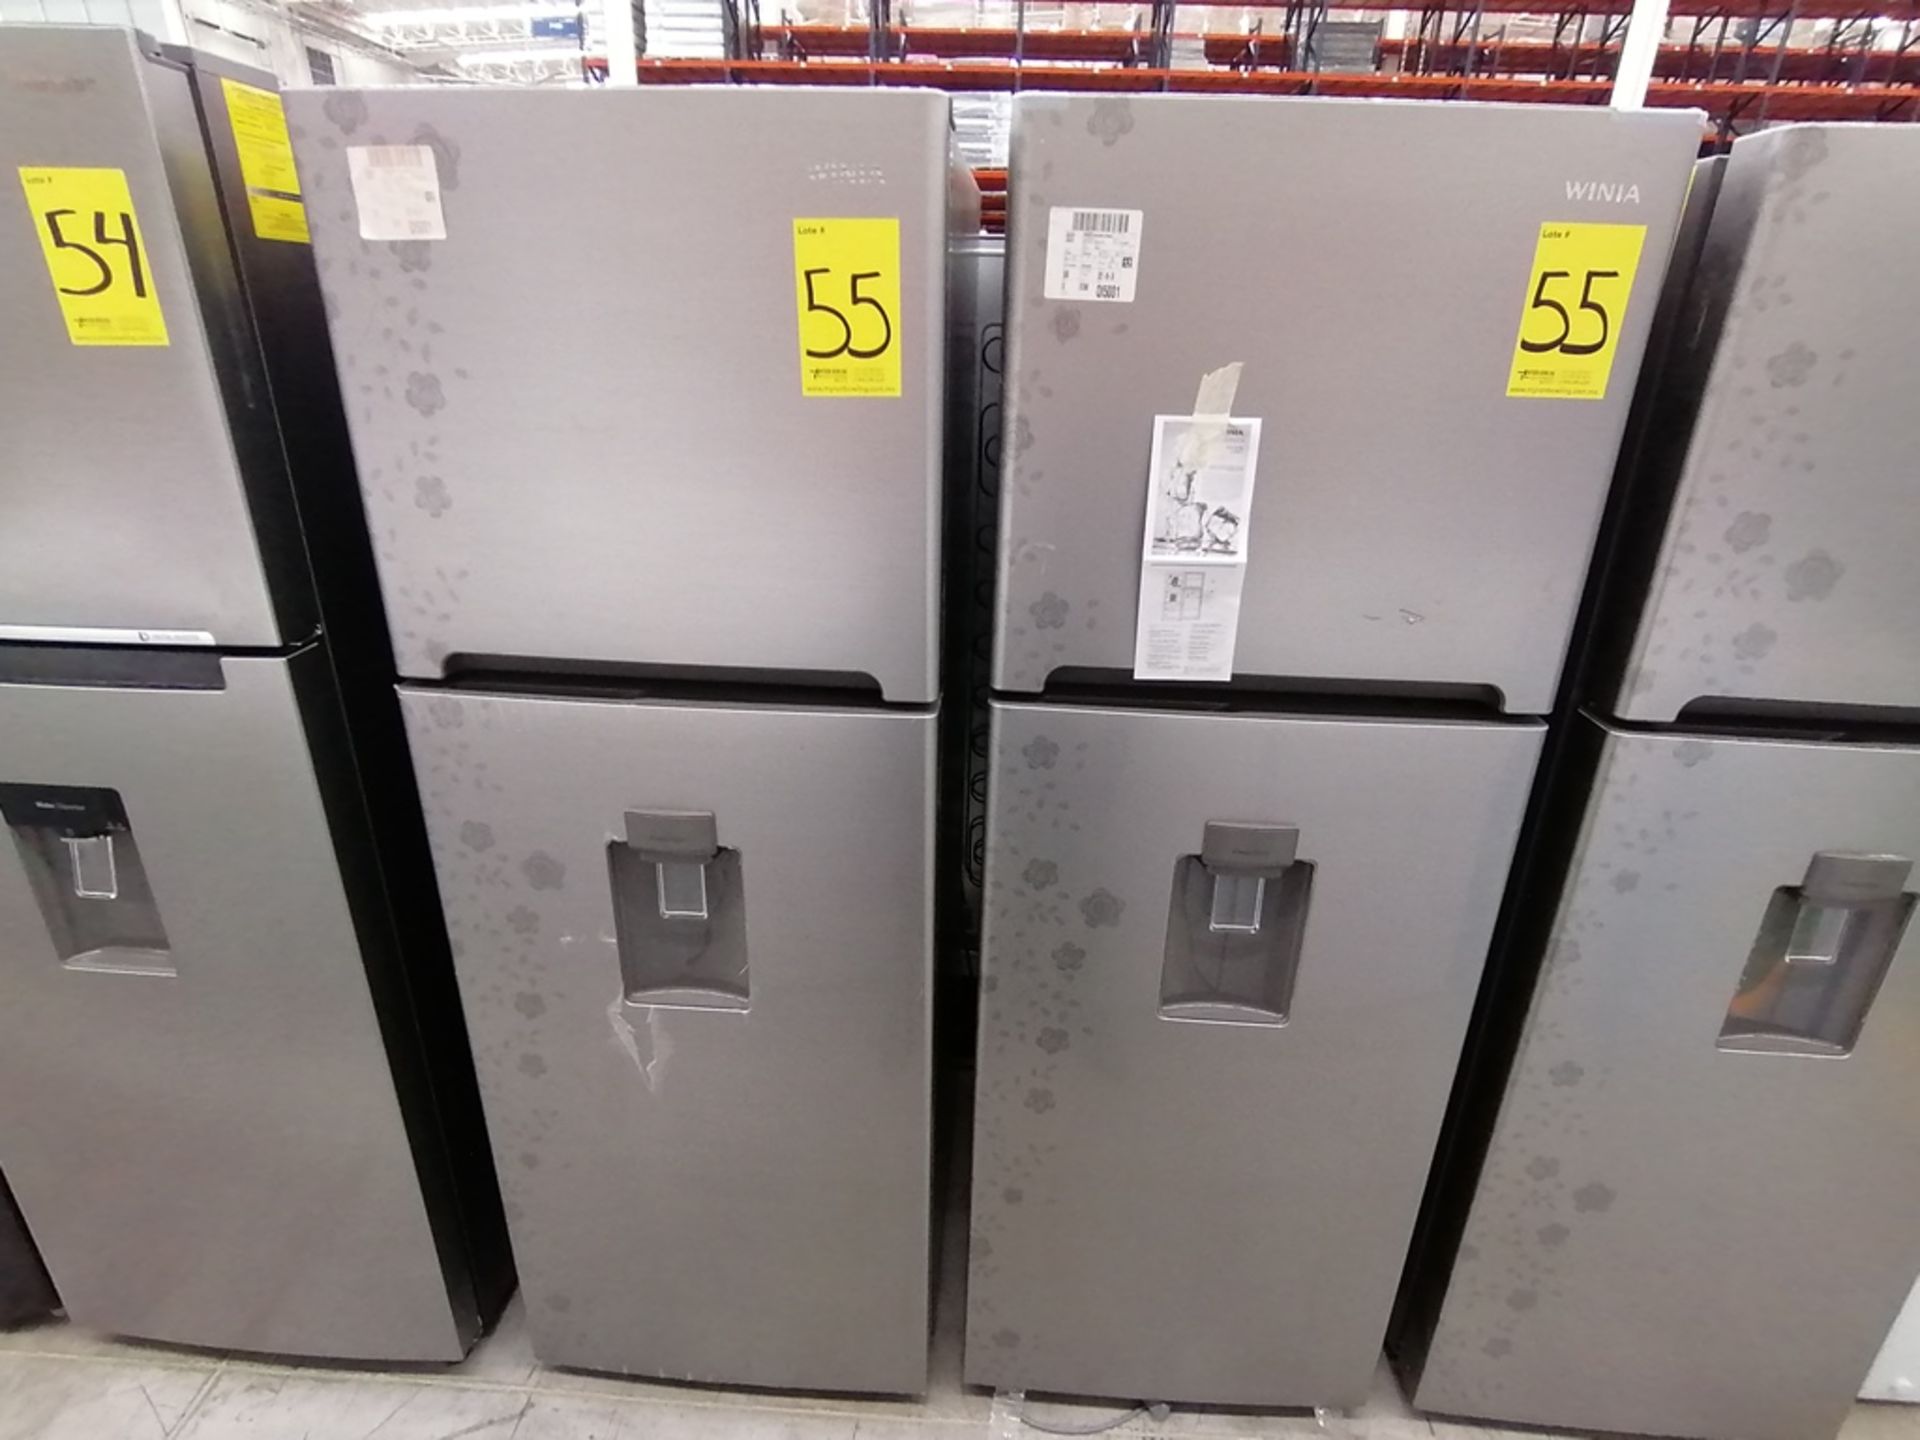 Lote de 2 refrigeradores incluye: 1 Refrigerador con dispensador de agua, Marca Winia, Modelo DFR40 - Image 3 of 15